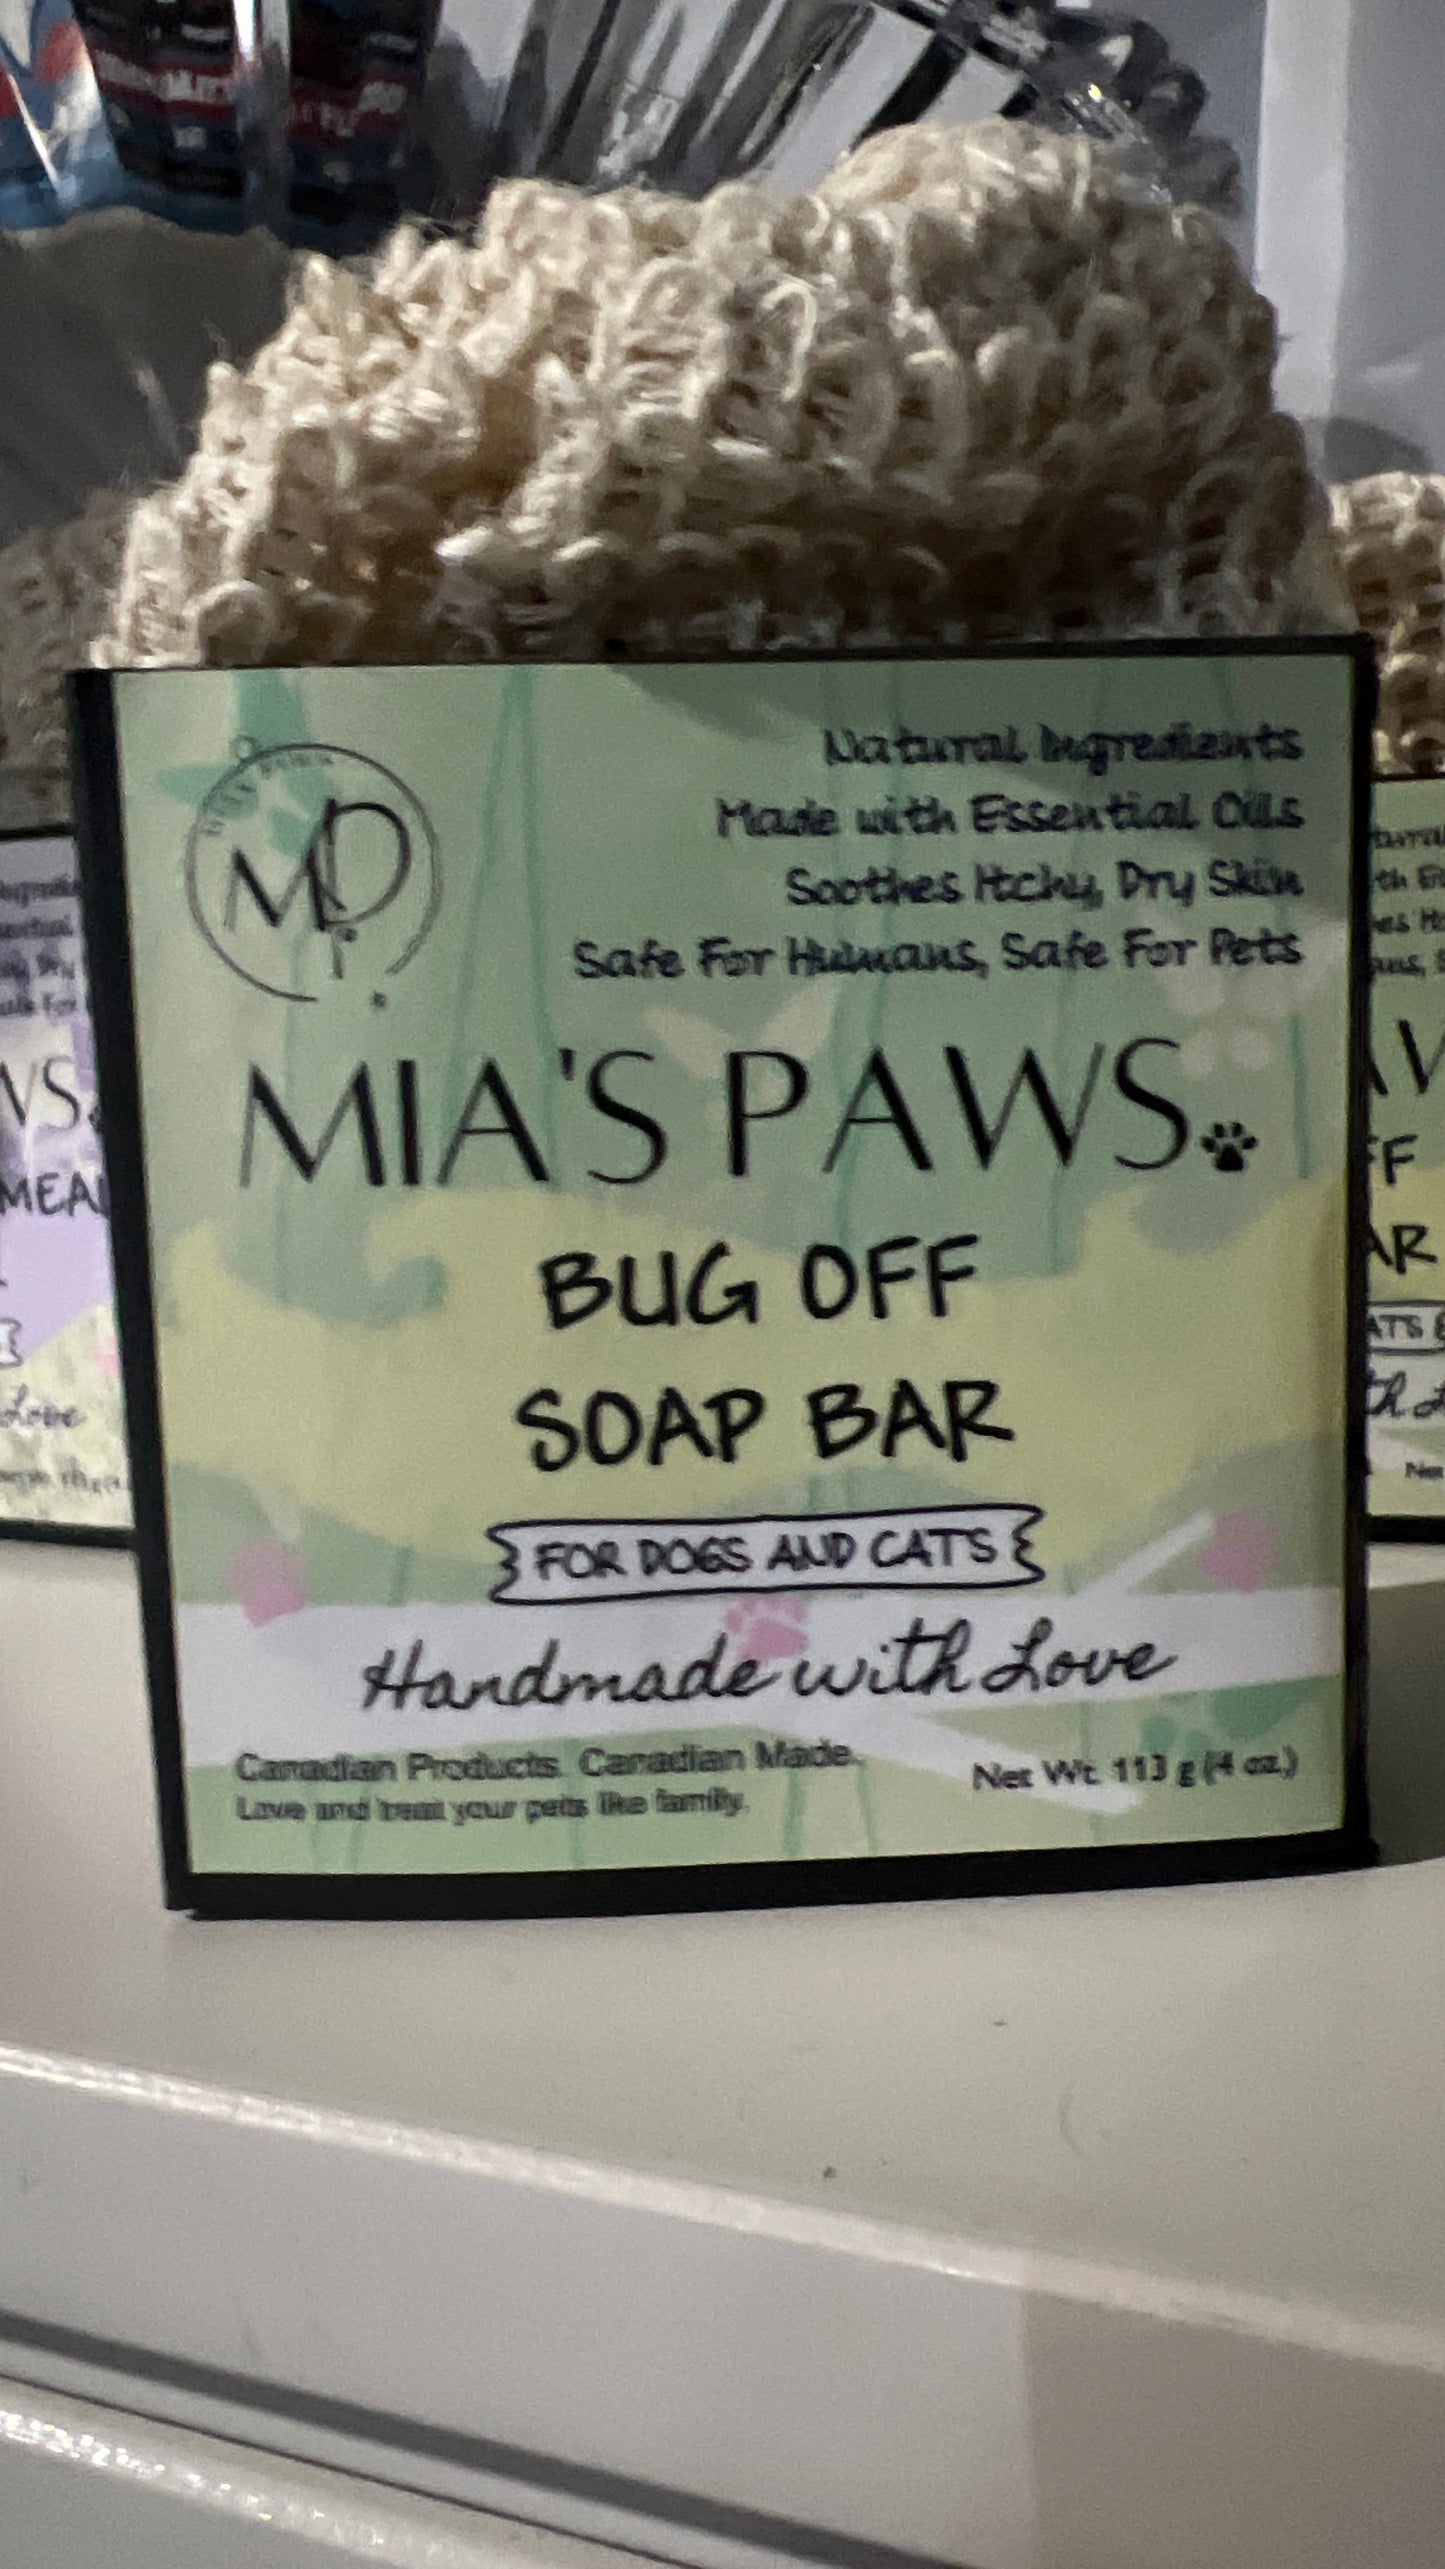 Mia's Soap Bars - Mia's Paws